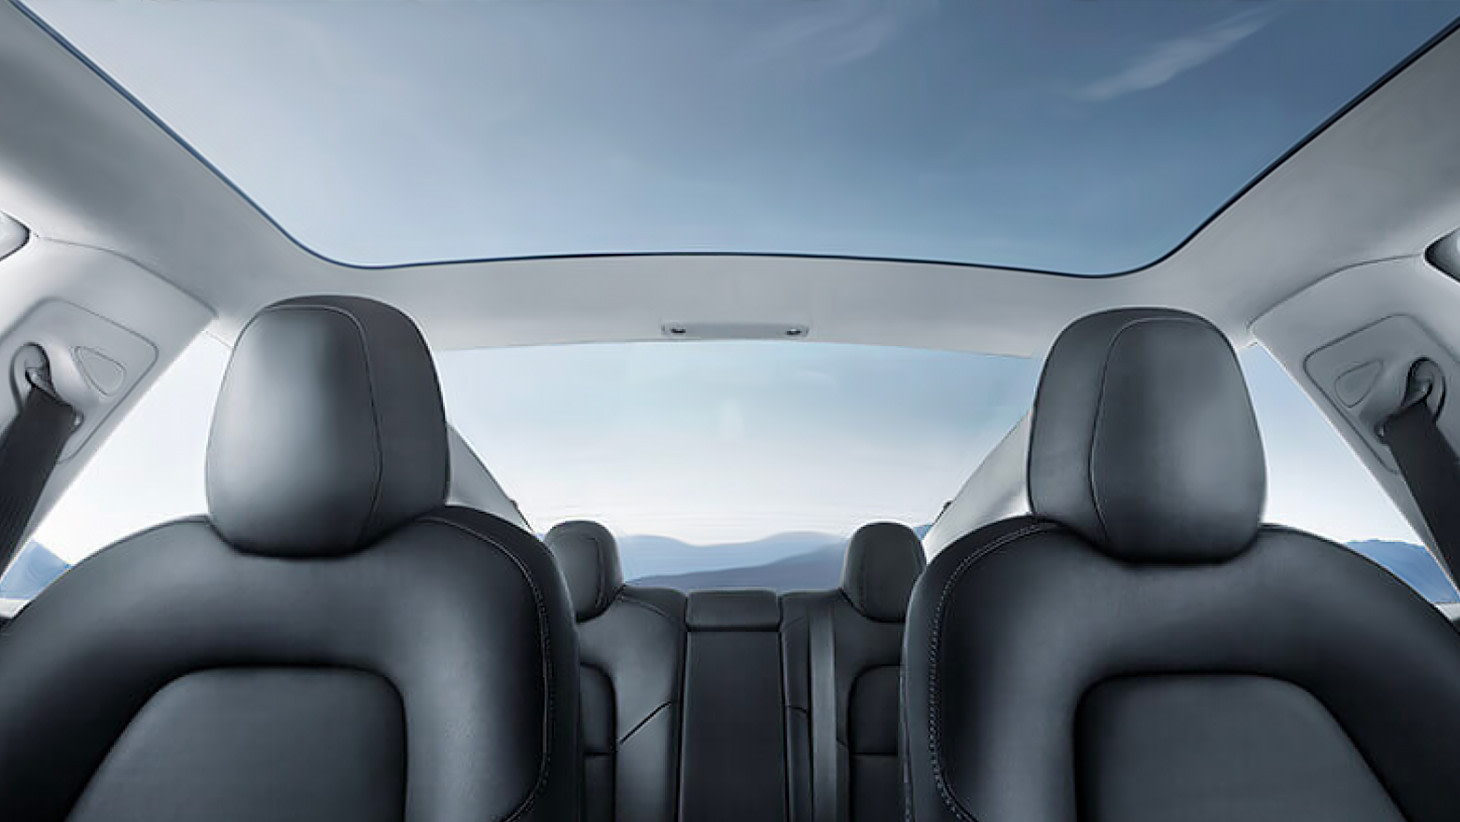 Pohled z interiéru přes prosklenou střechu vozu Model 3